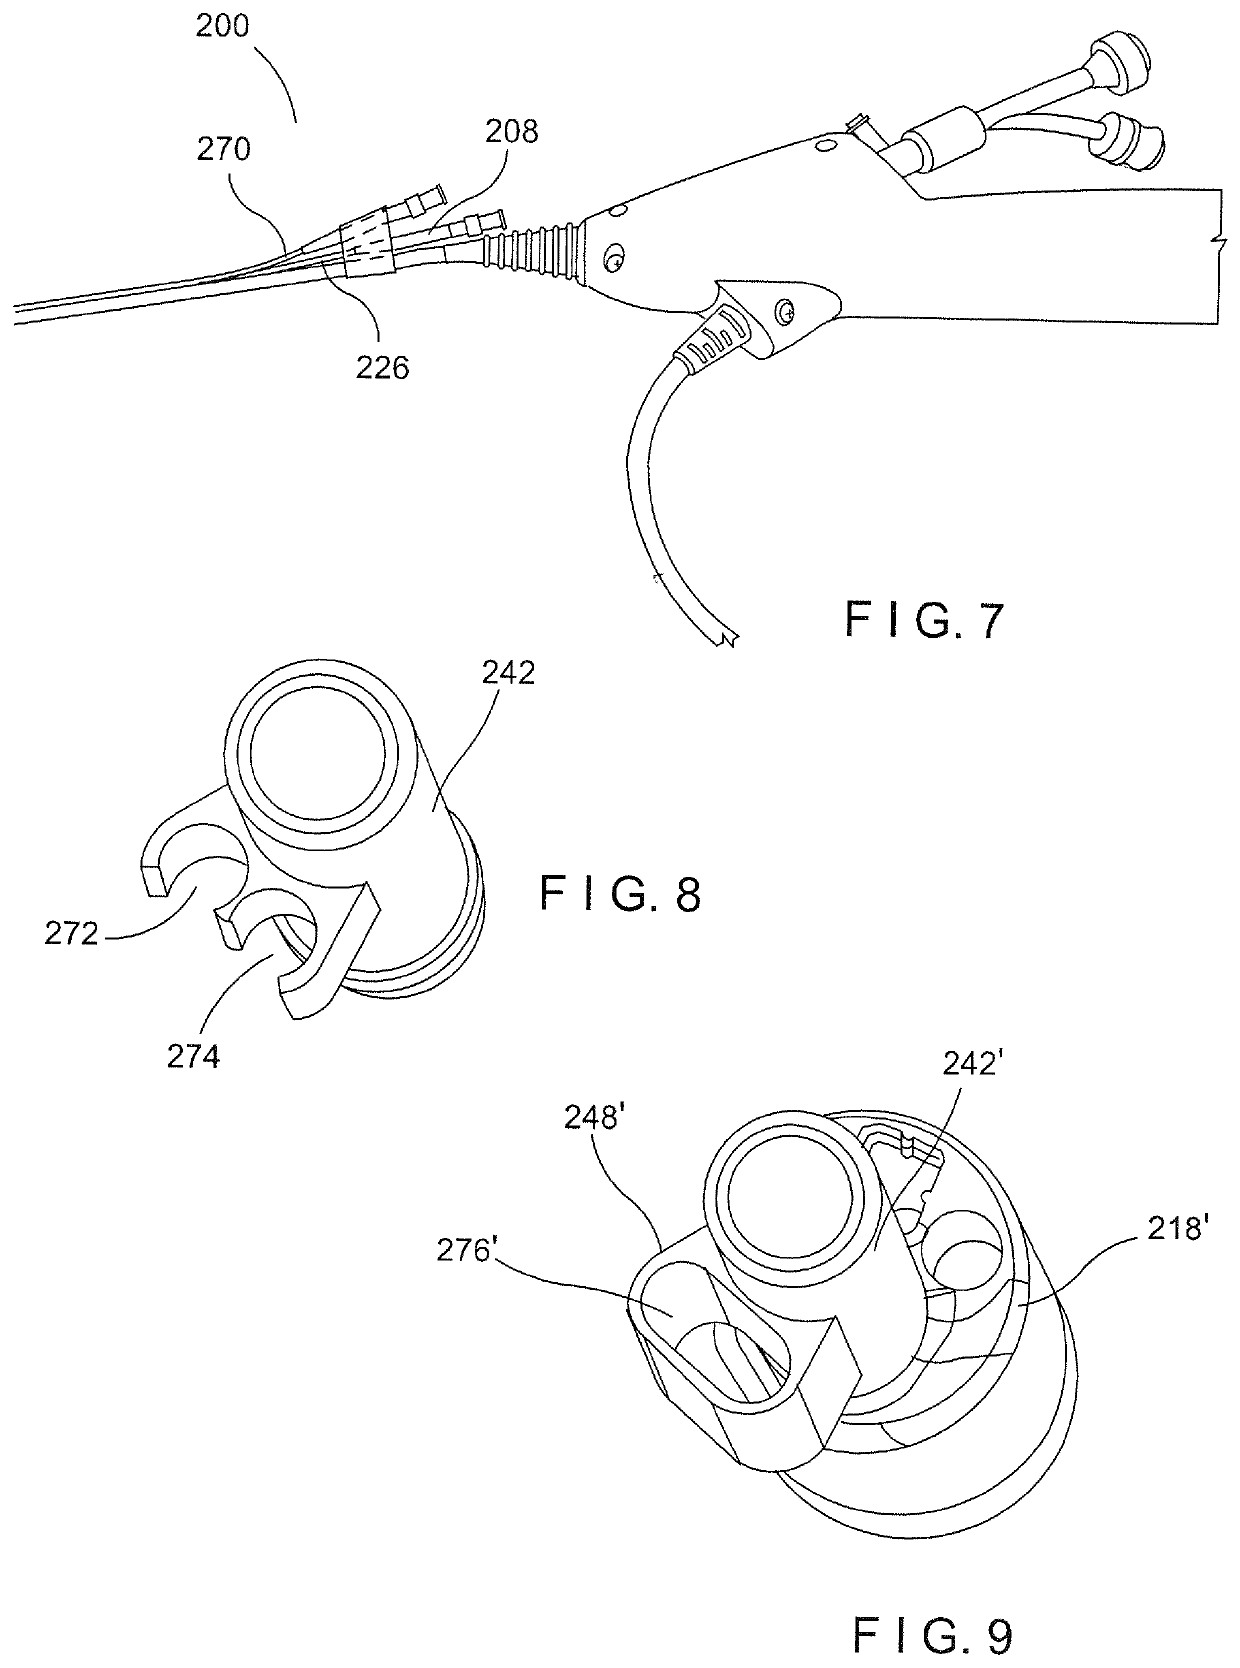 Multiple channel flexible ureteroscope